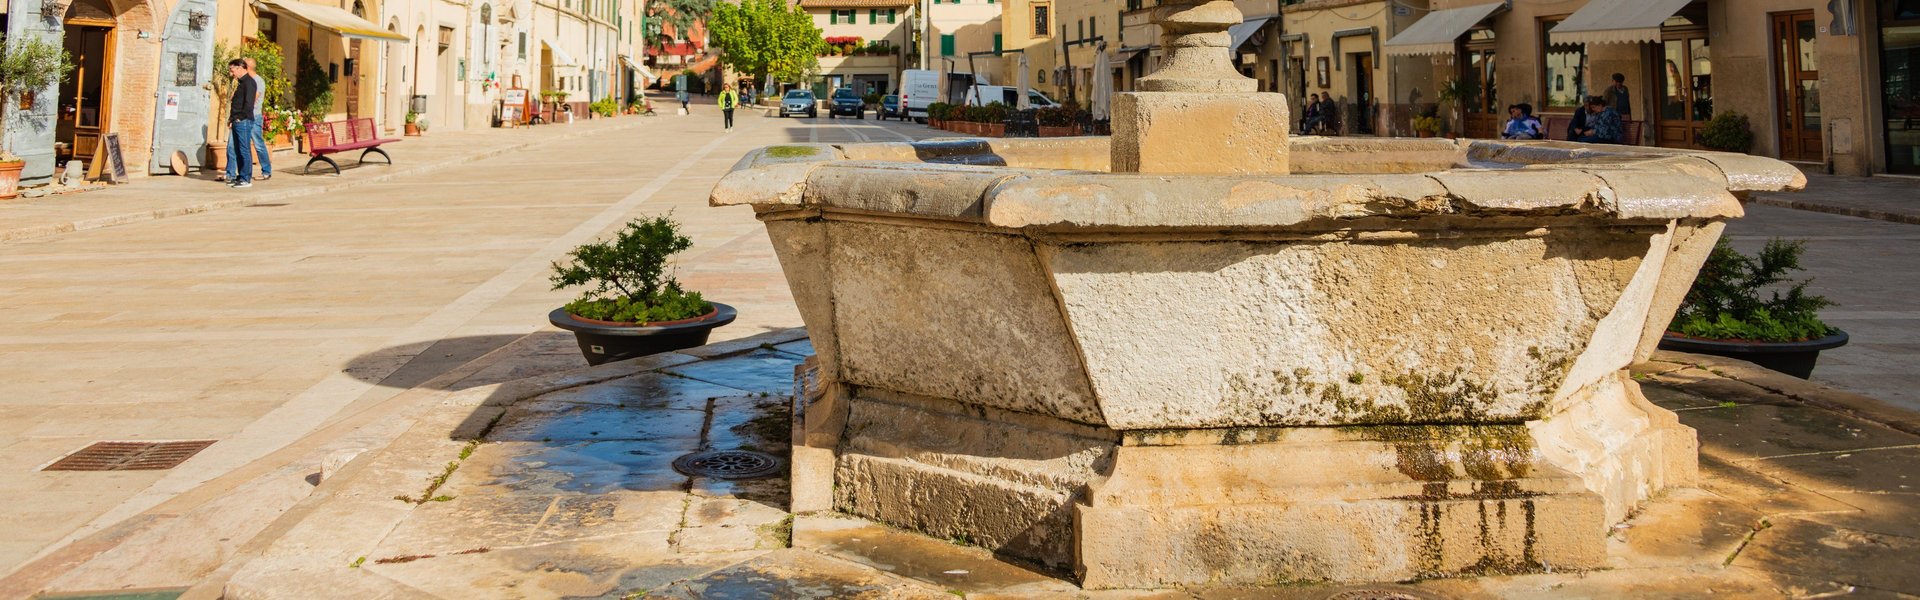 Cetona, piazza Garibaldi con fontana